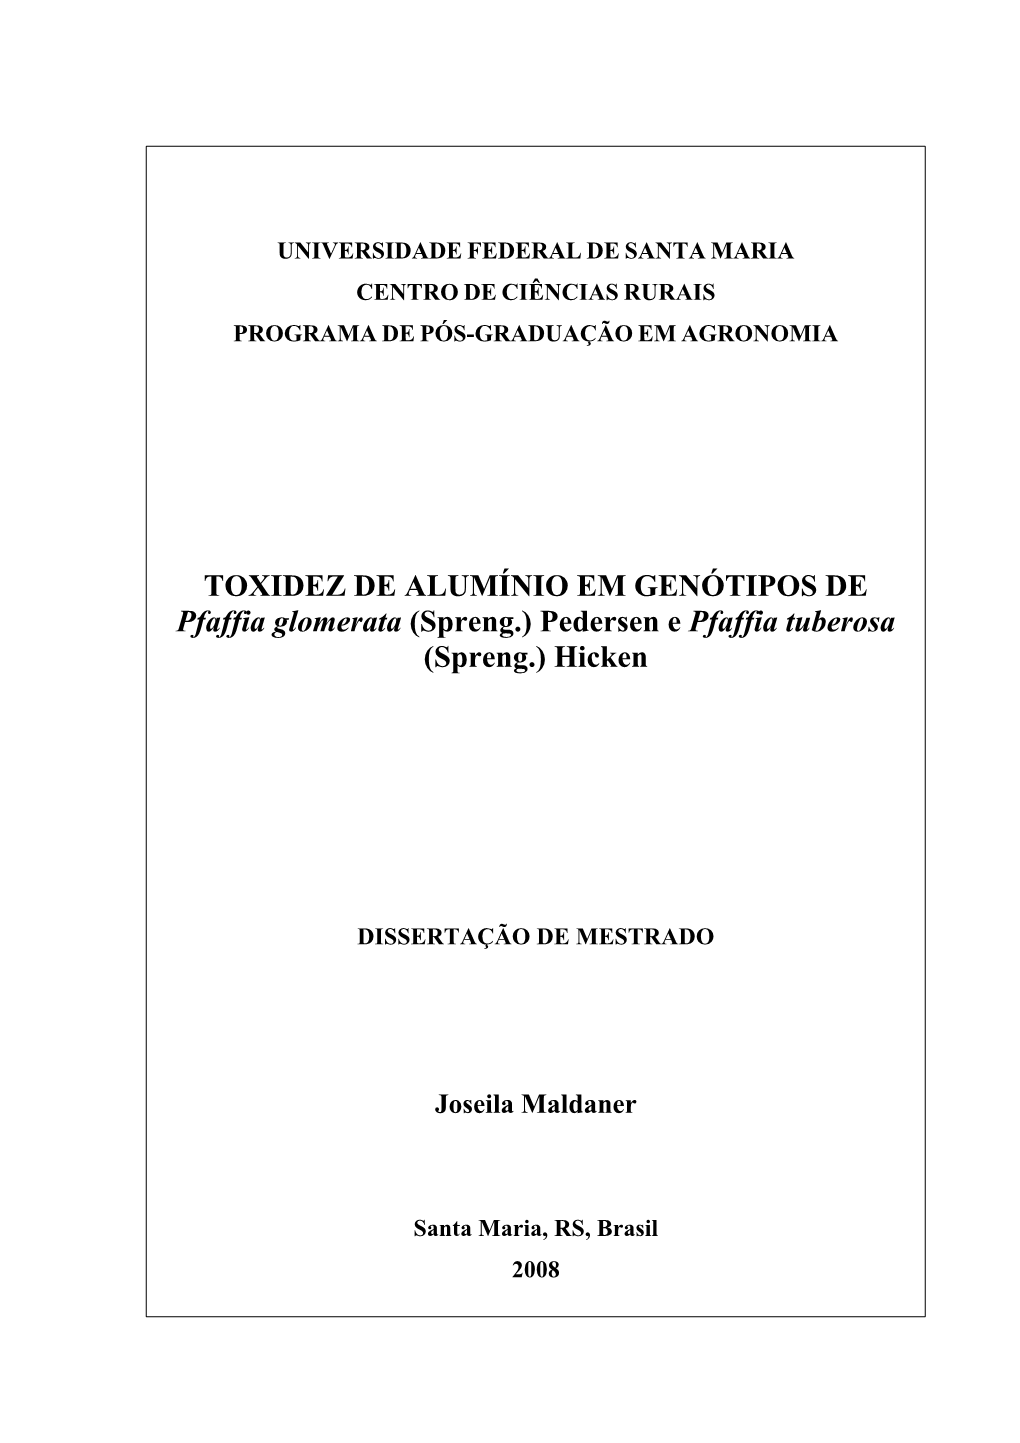 TOXIDEZ DE ALUMÍNIO EM GENÓTIPOS DE Pfaffia Glomerata (Spreng.) Pedersen E Pfaffia Tuberosa (Spreng.) Hicken